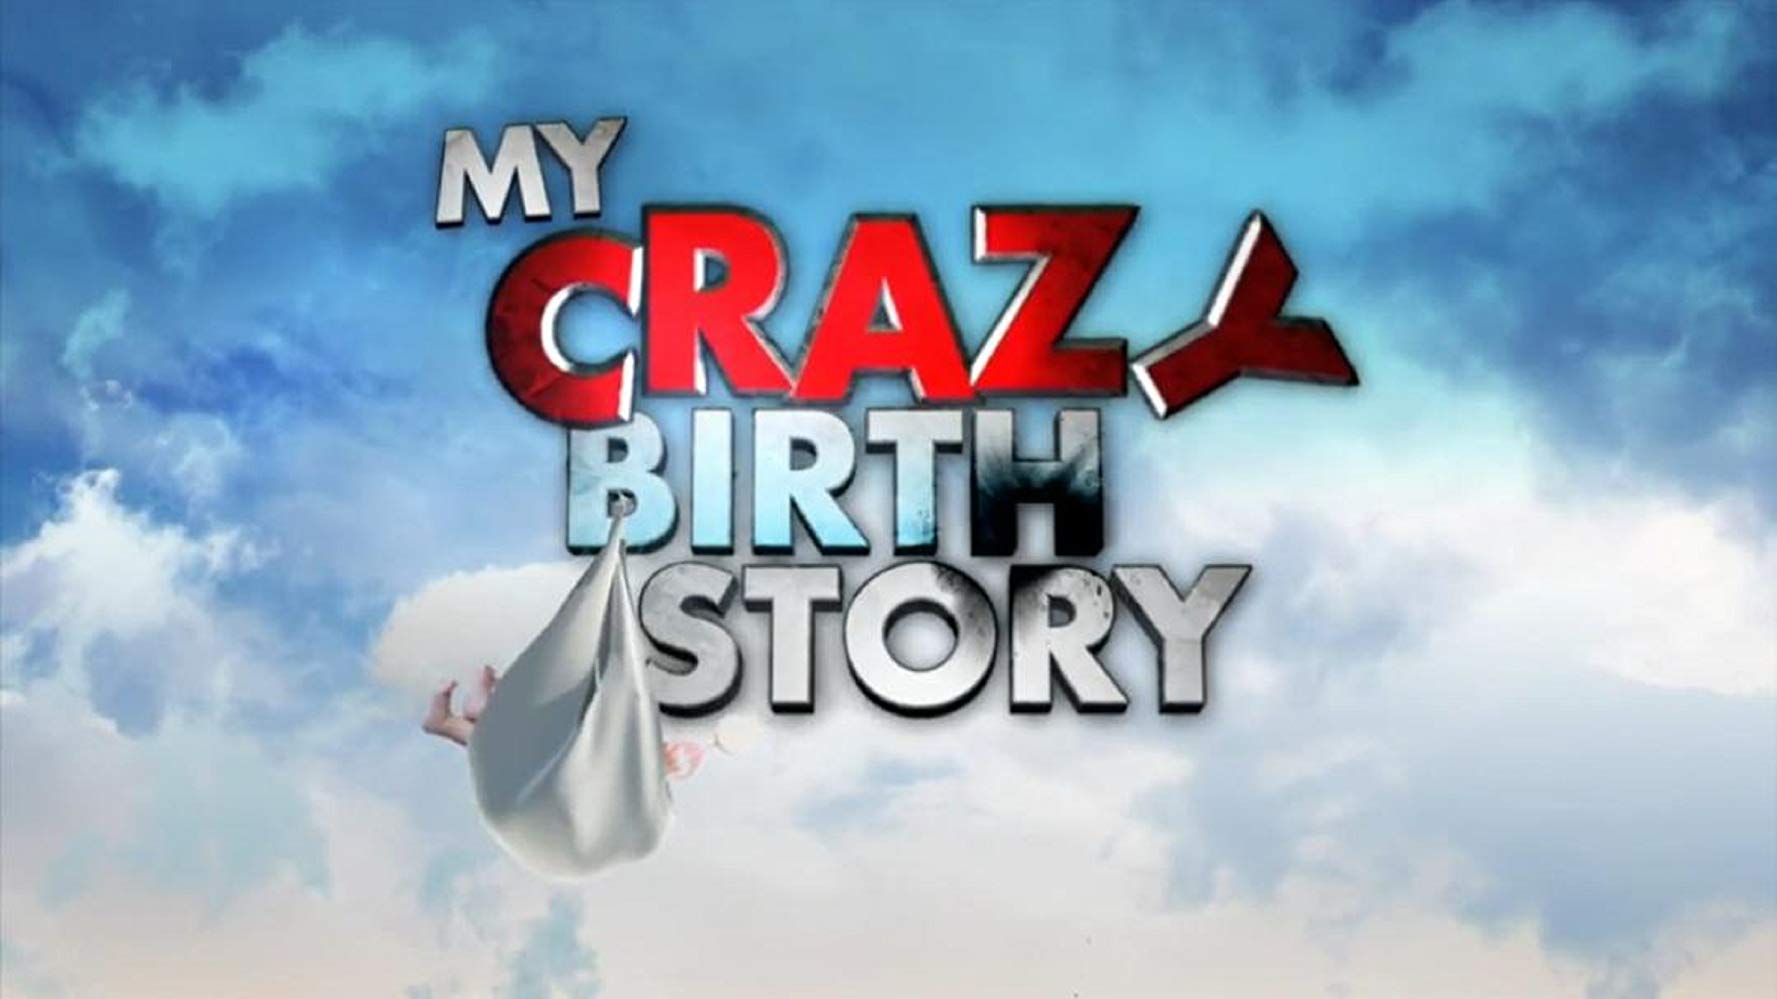 Caratula de My crazy birth story (Bebé por sorpresa) 